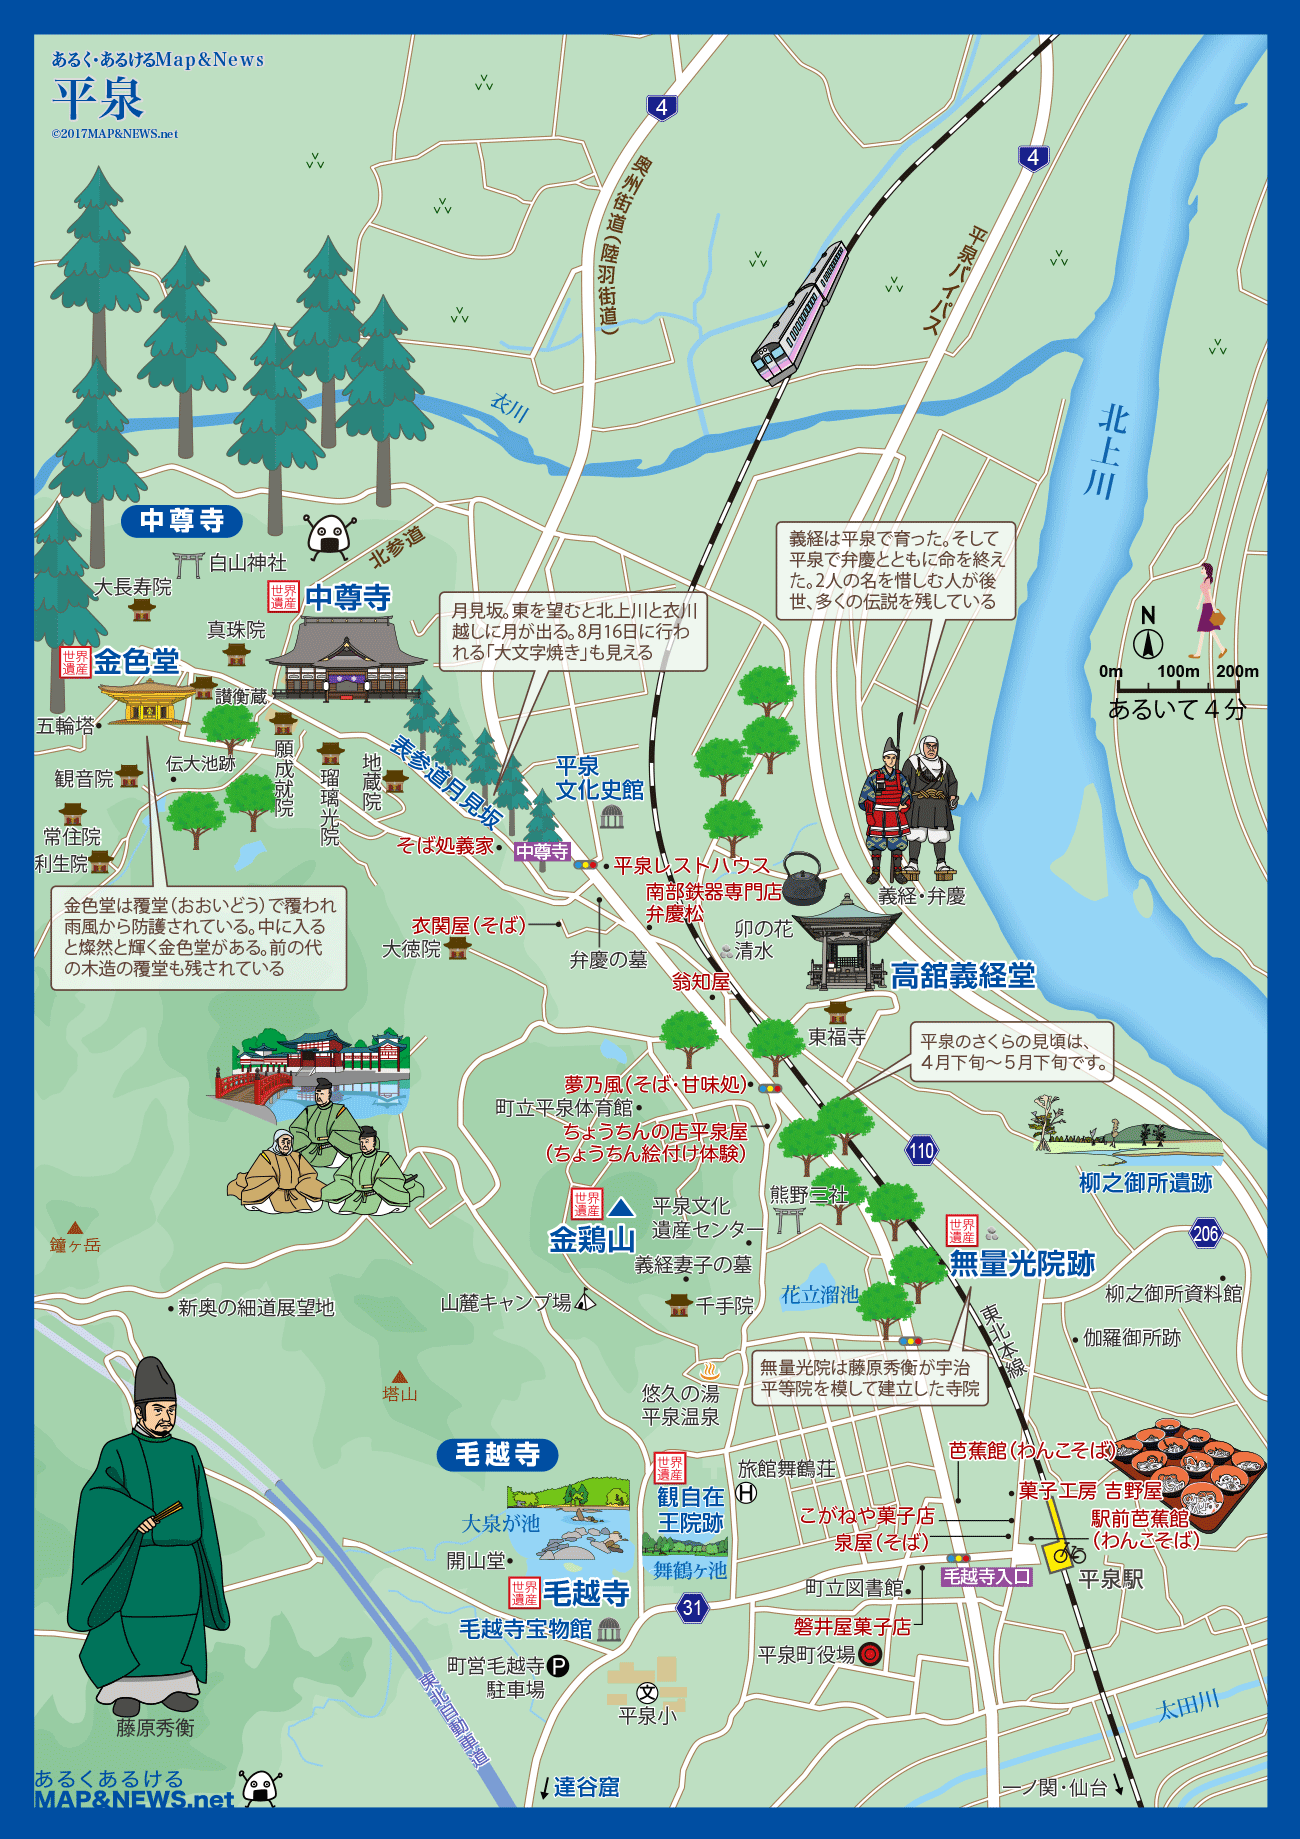 岩手県 平泉 あるく あるけるマップ ニュース 観光あるき地図